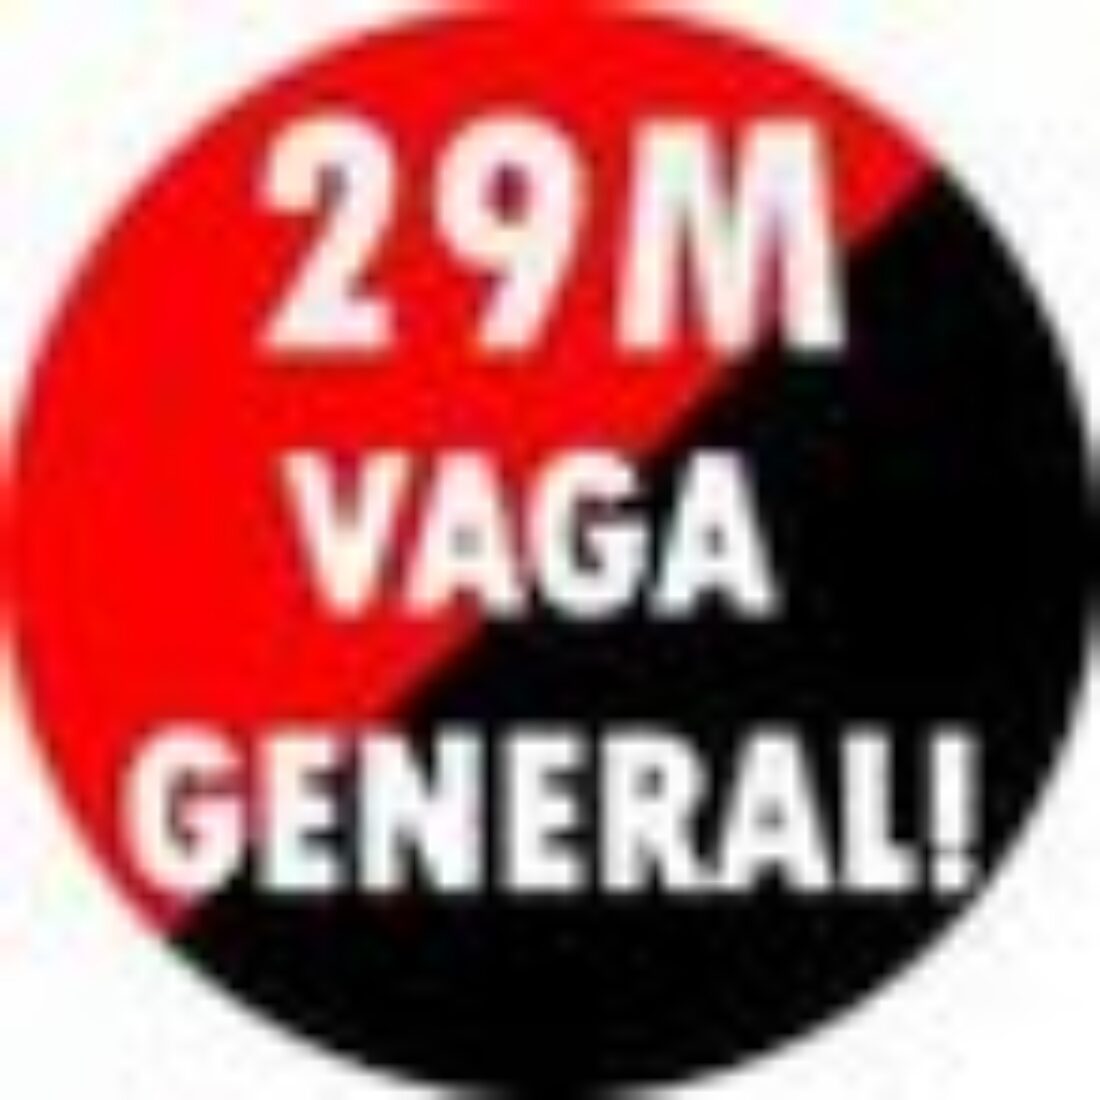 Concentración en Vilanova i la Geltrú para llamar a la huelga del 29m